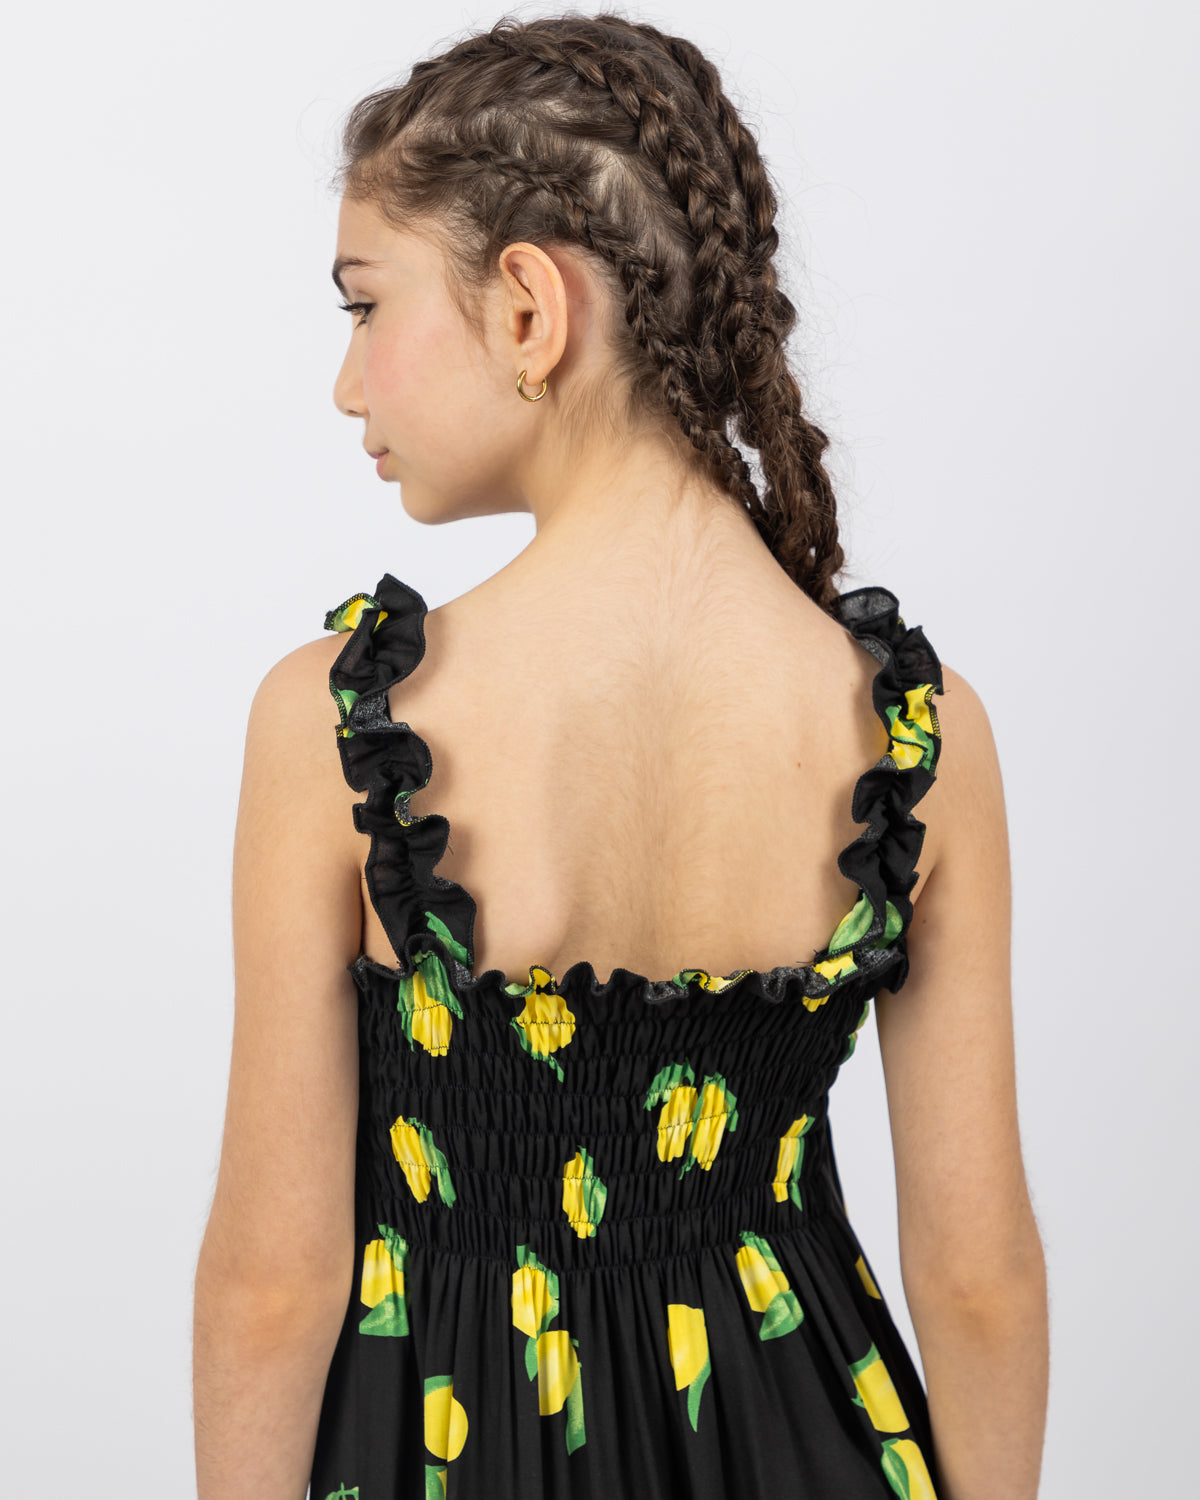 Lemon Print Long Dress For Girls - Black